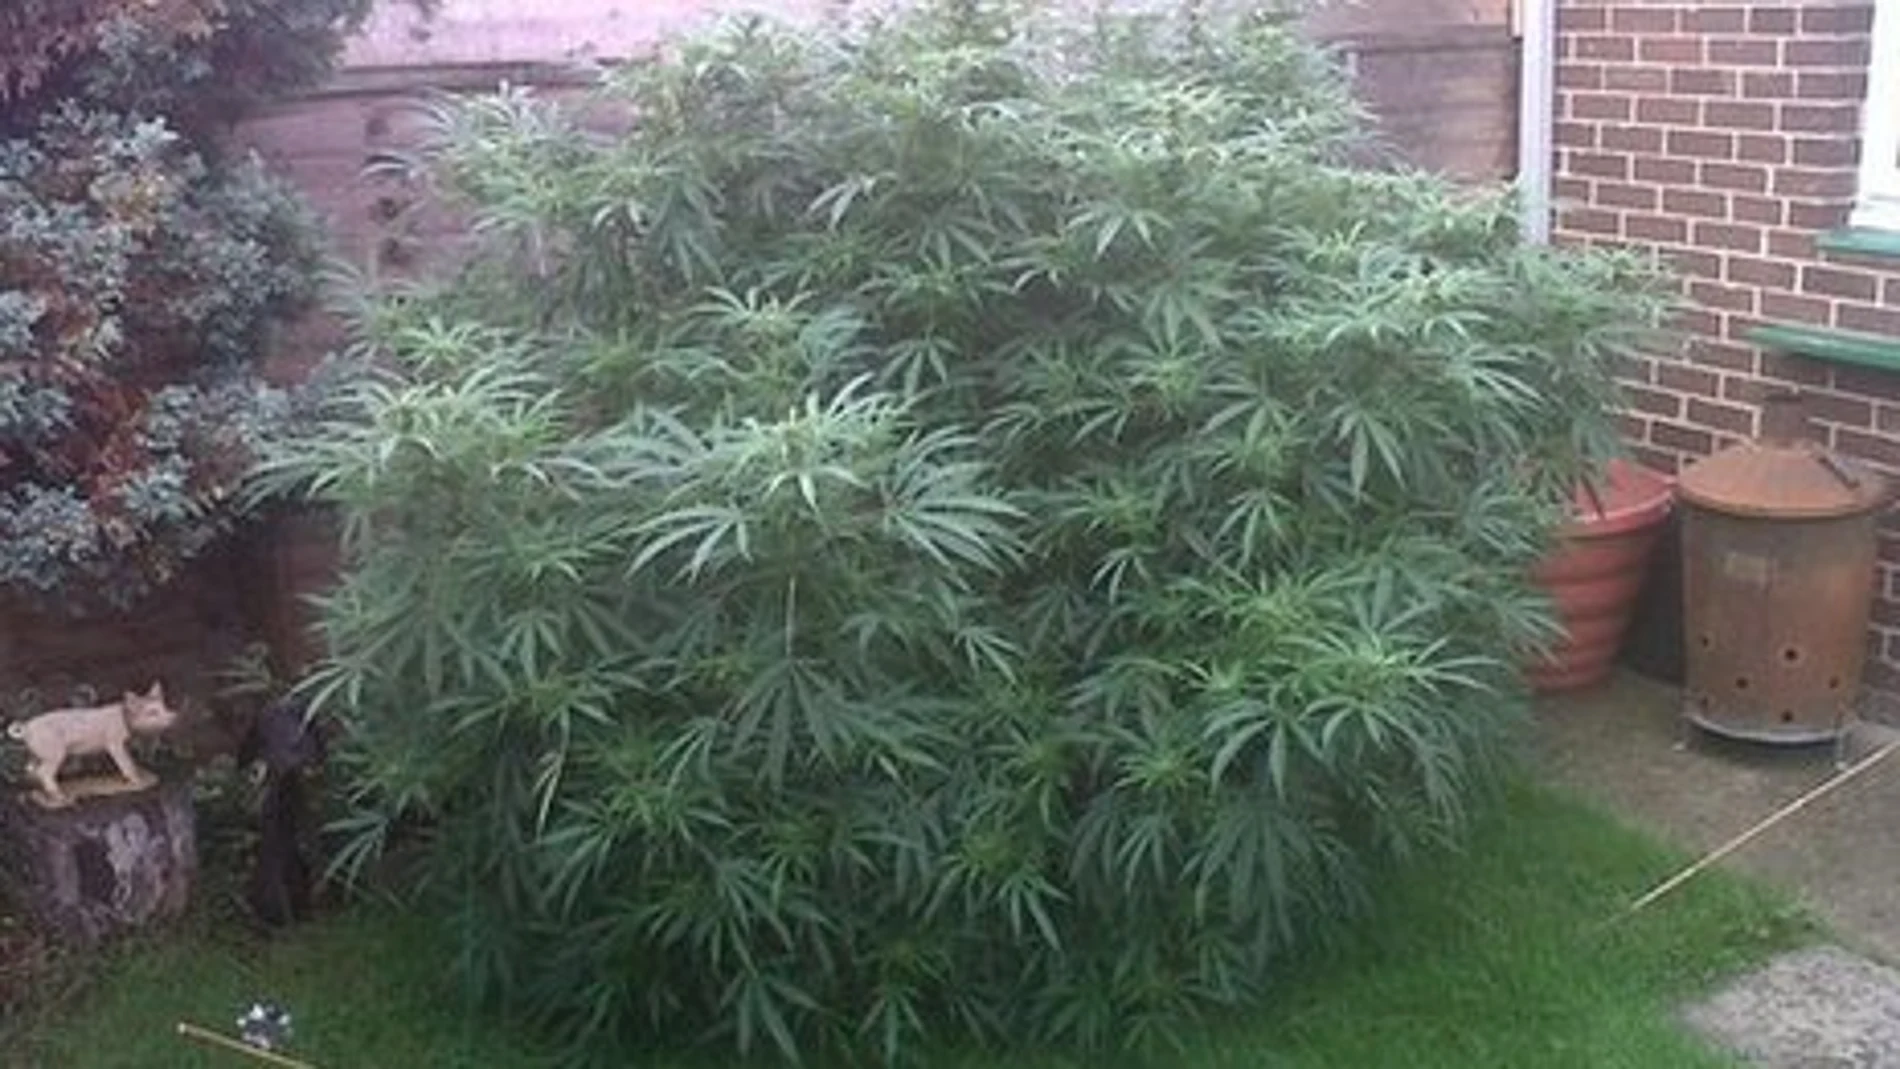 La planta de cannabis que se encontraron los agentes, y cuya imagen subieron a twitter